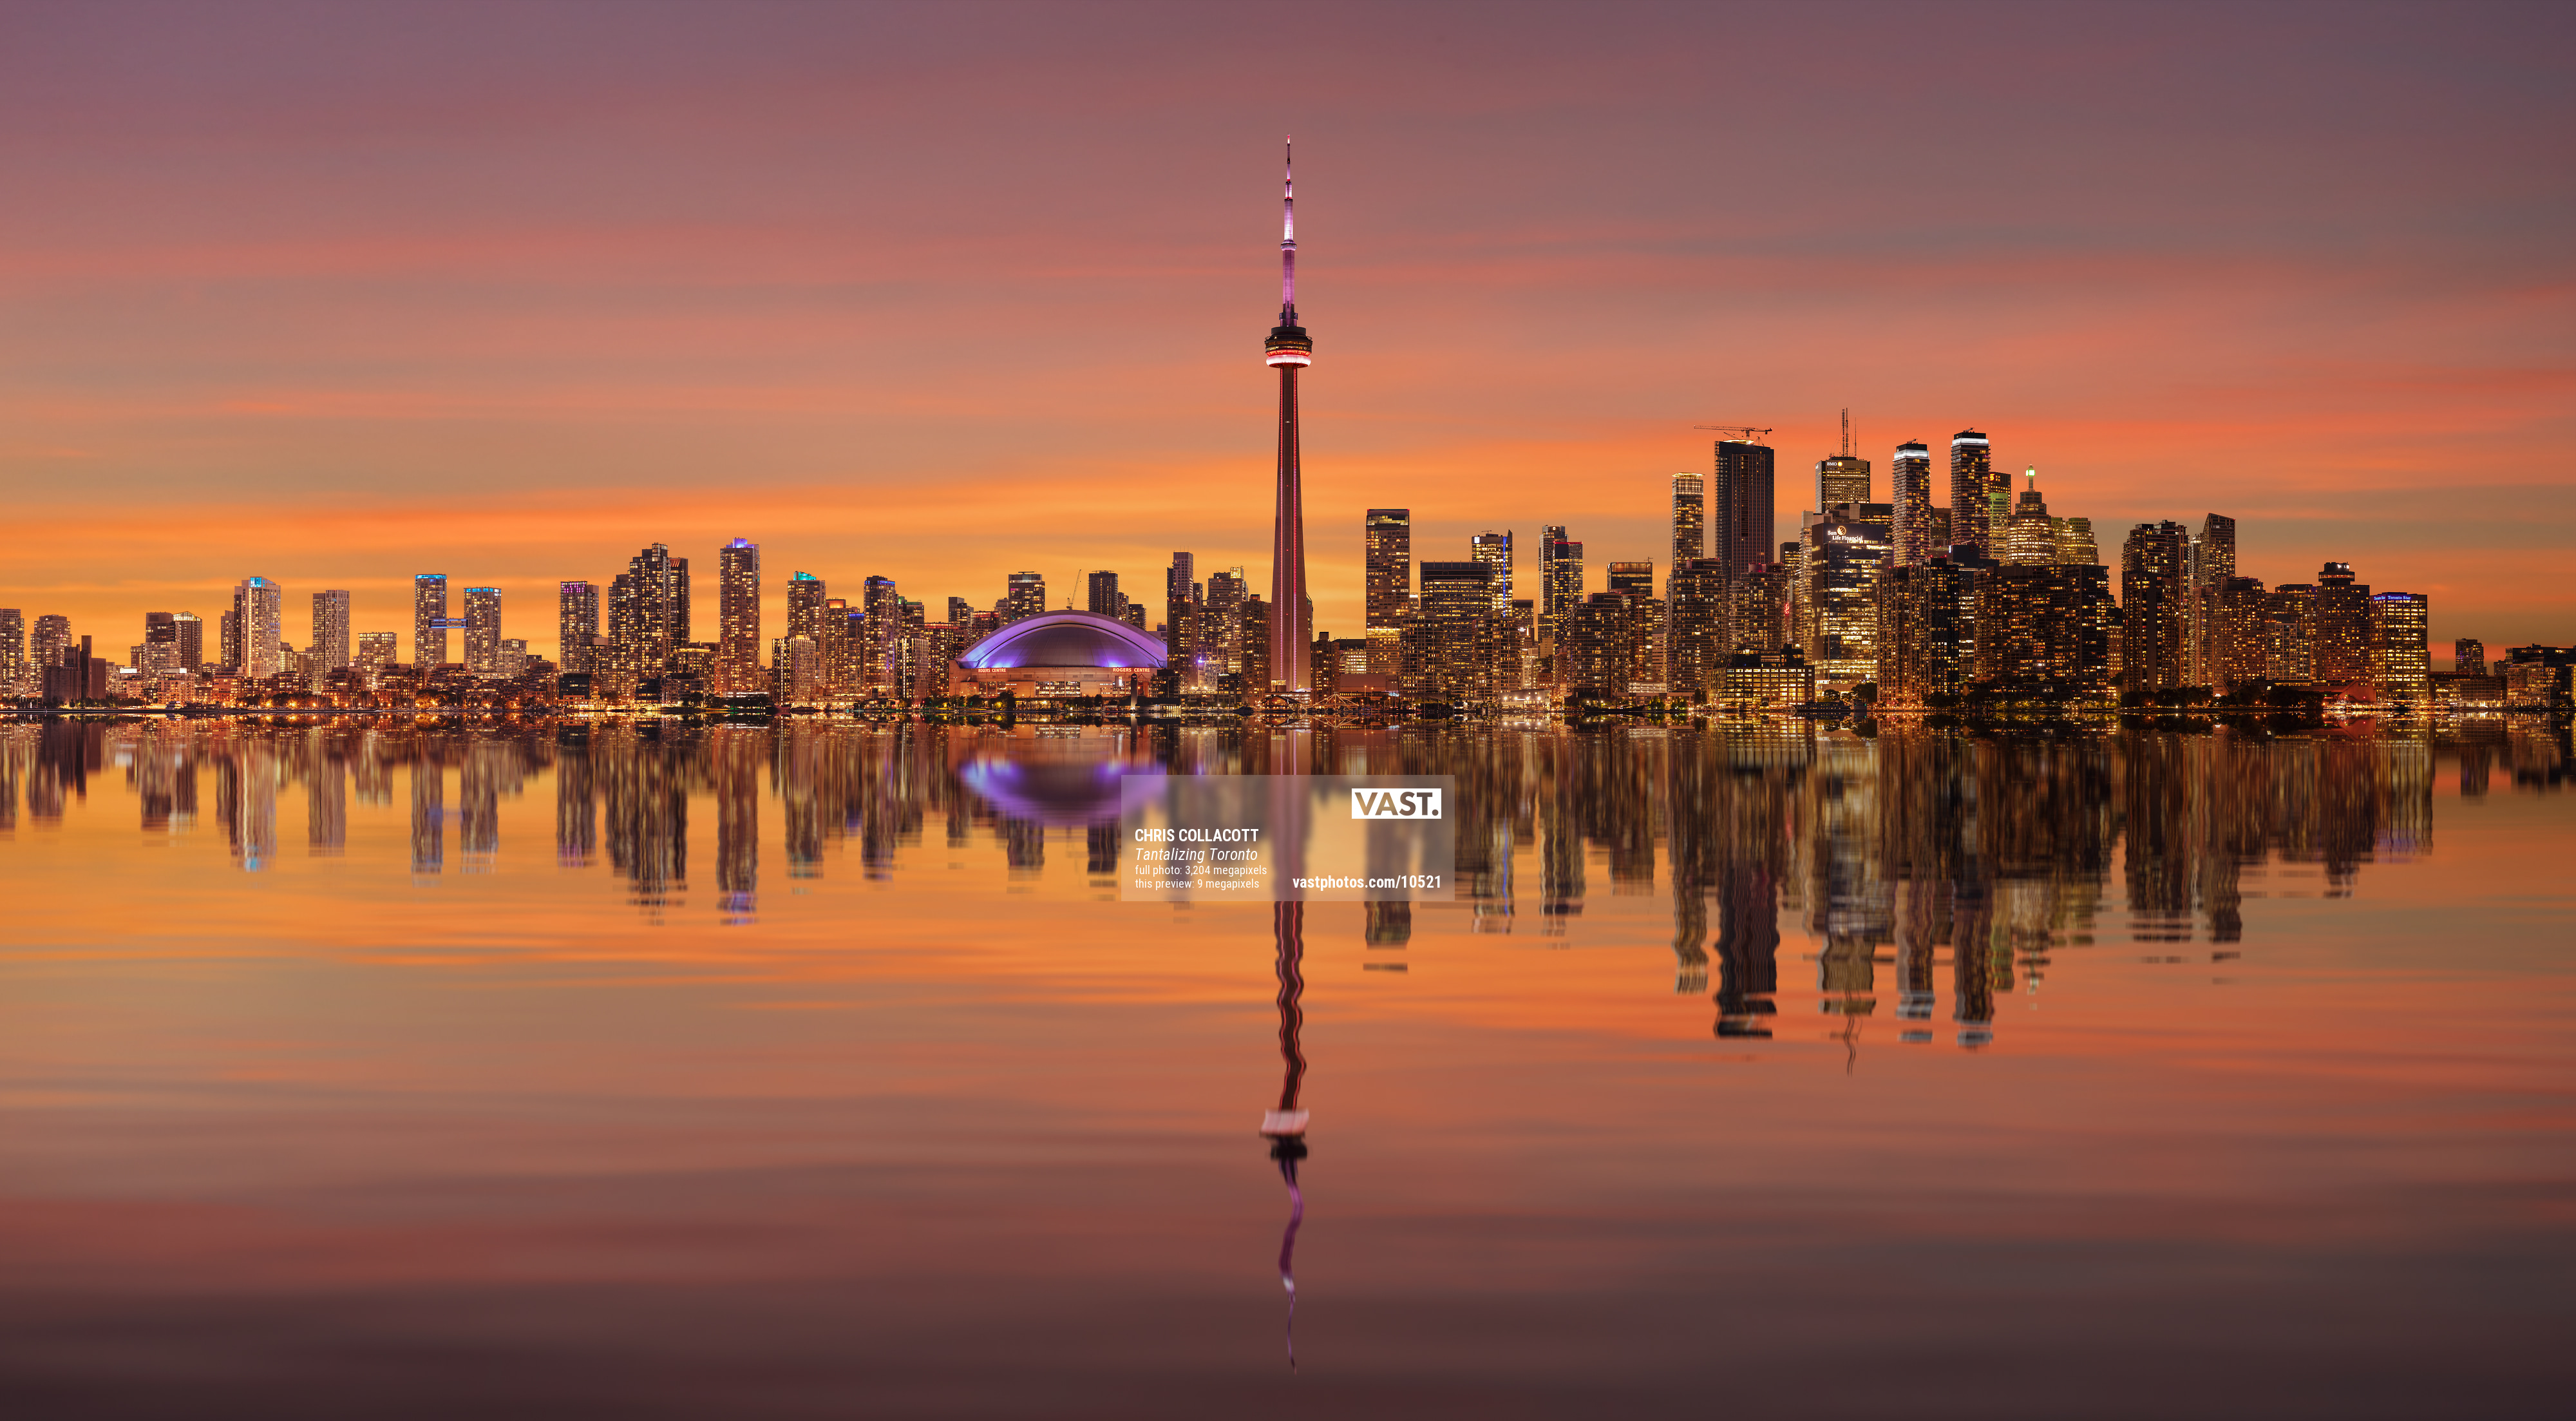 Hình ảnh Toronto Skyline: Toronto Skyline là một bức tranh tuyệt đẹp của sự phát triển và thịnh vượng của thành phố lớn nhất Canada. Nhấn vào hình ảnh để check-in \